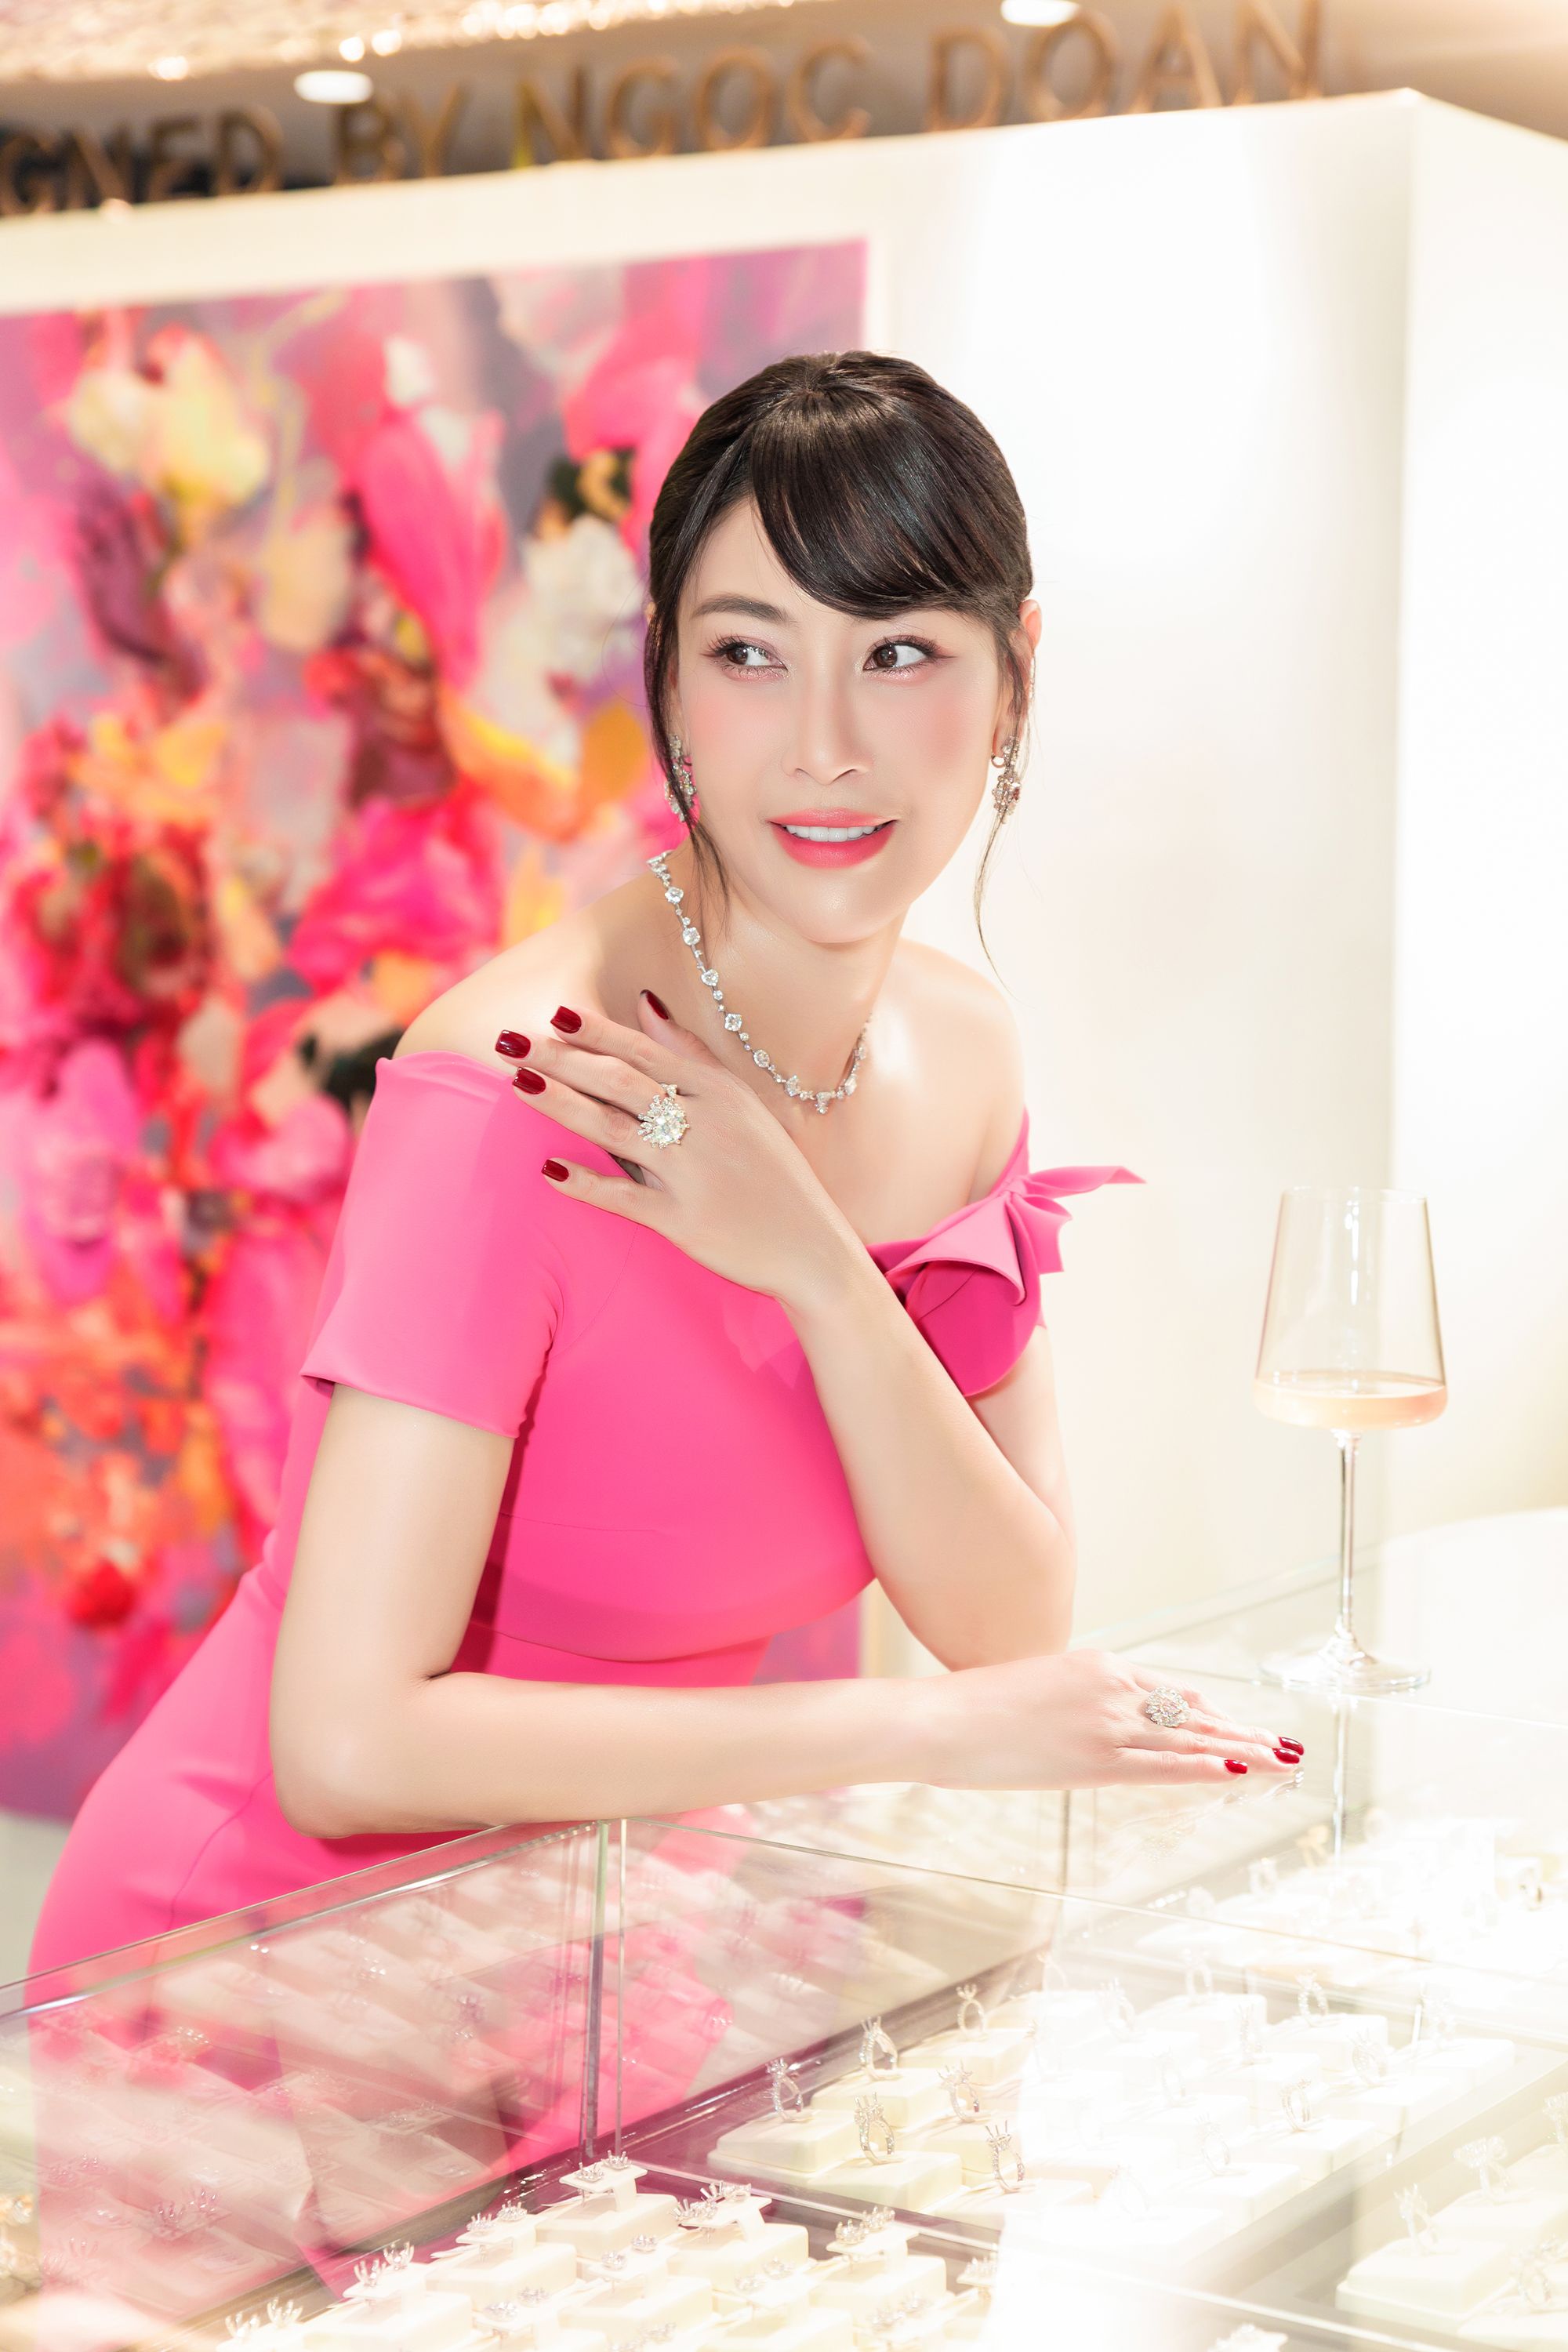 Hoa hậu Hà Kiều Anh sang trọng trong bộ trang sức kim cương - Ảnh 6.